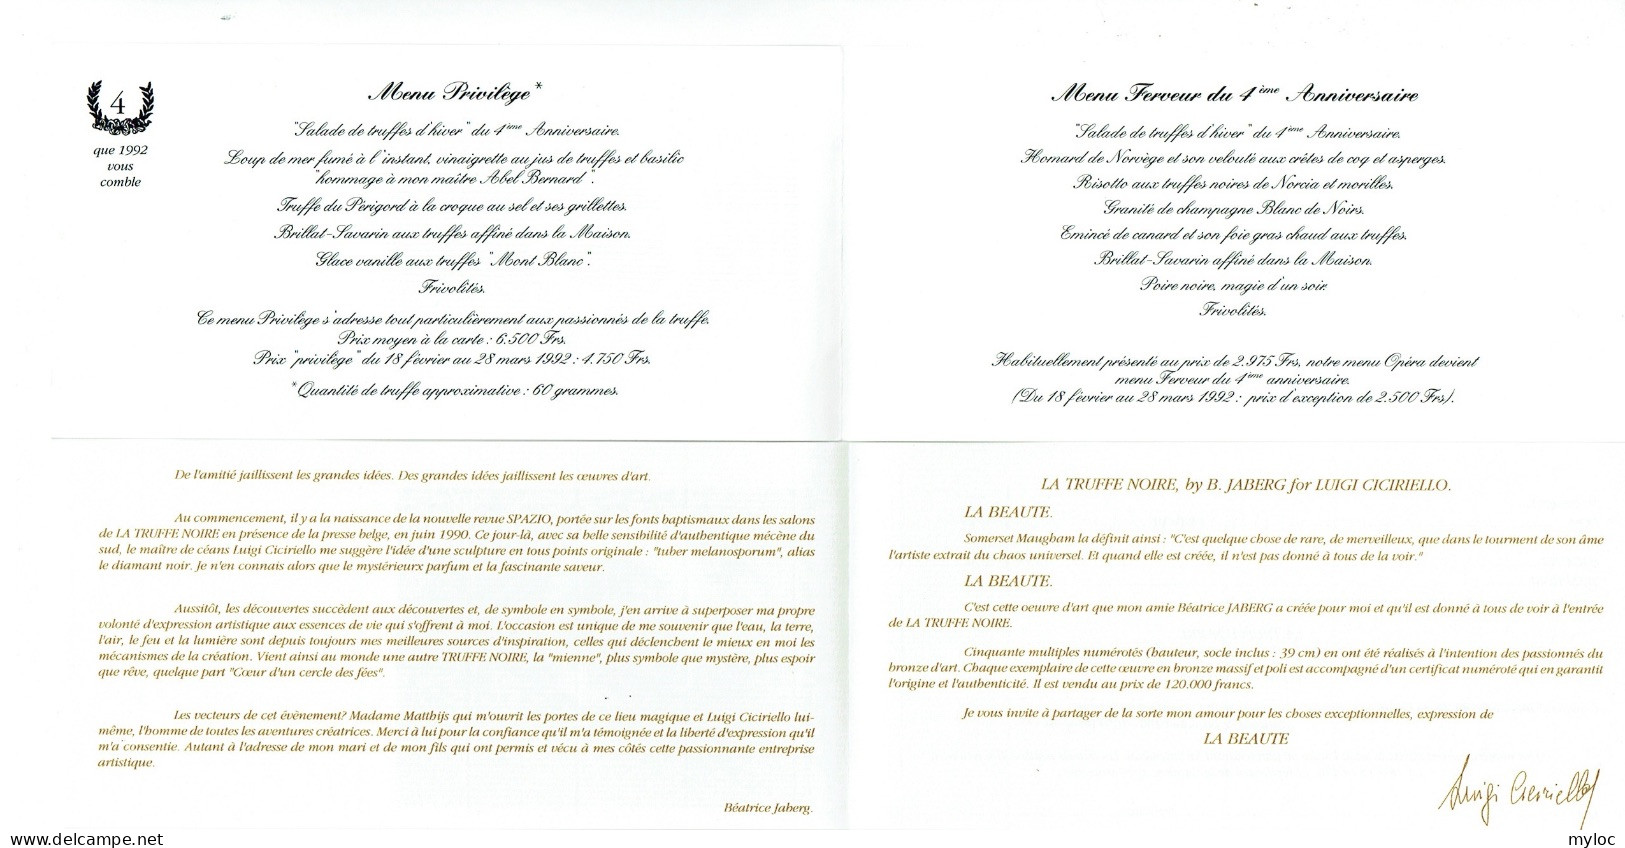 Menu Privilège. Restaurant La Truffe Noire, Bruxelles 1992 + Bulletin De Souscription Pour Achat Sculpture De Jaberg. - Menus